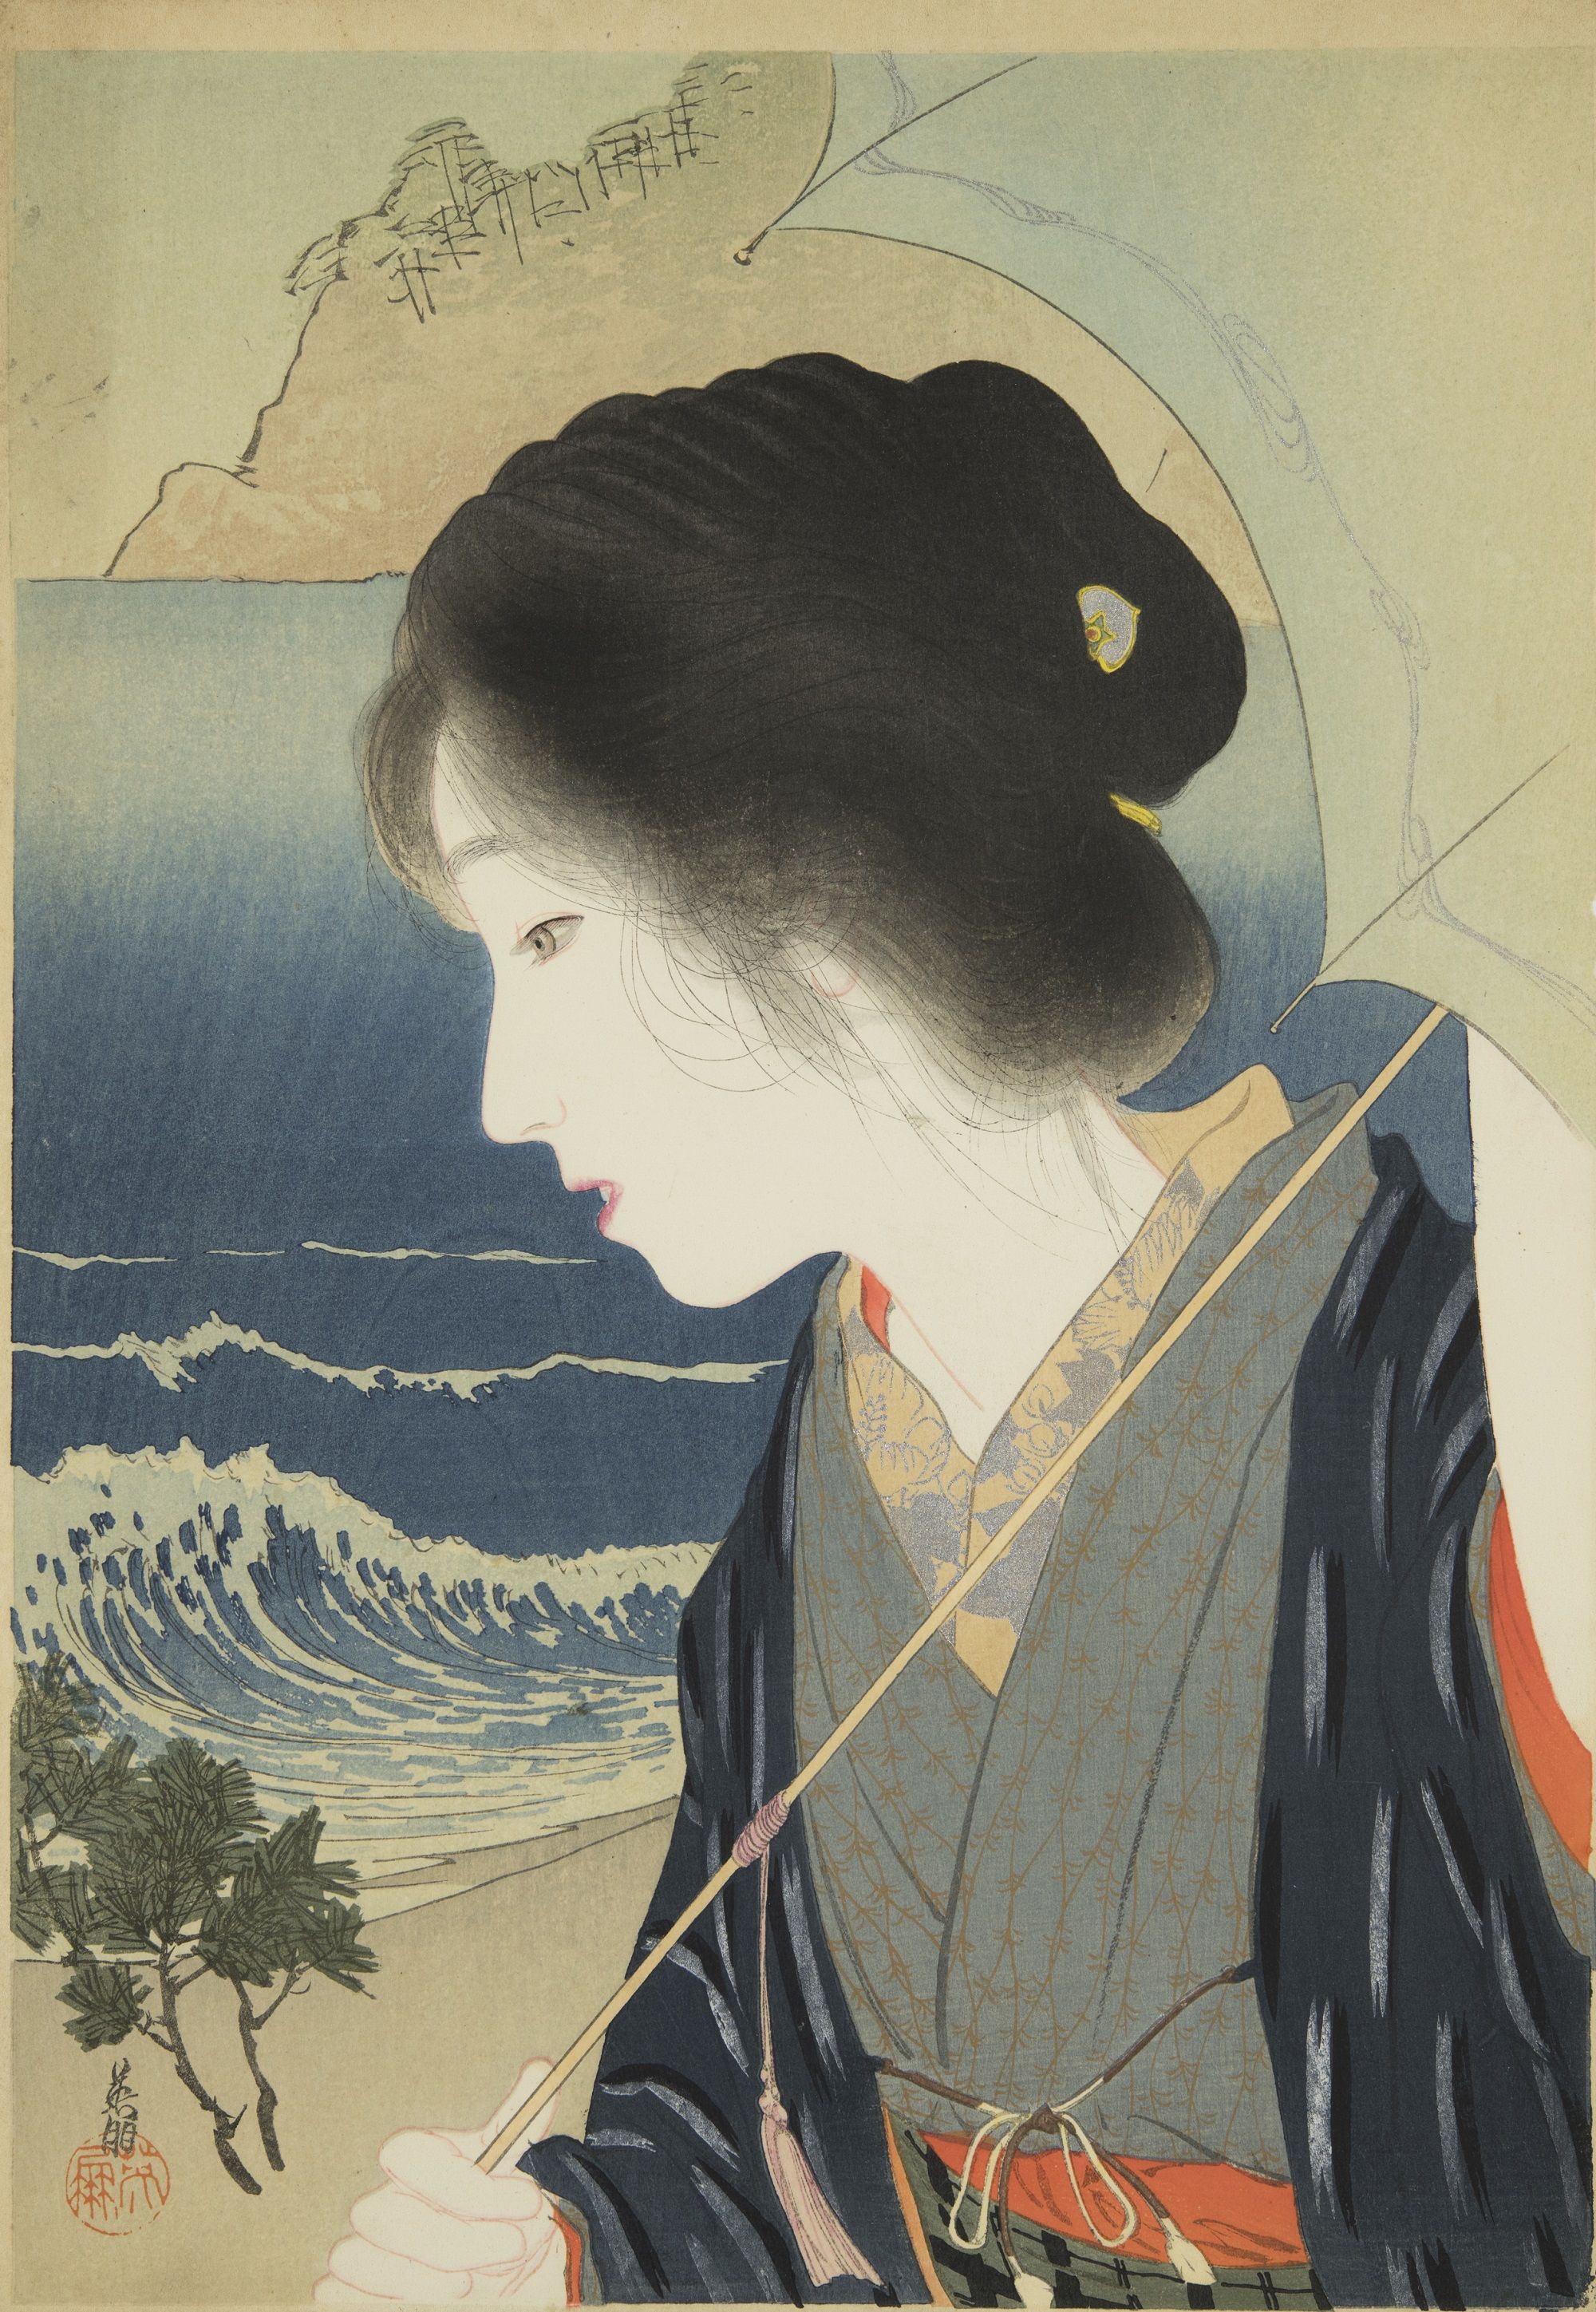 日本画、工芸の展覧会５選（2021年6月2日）